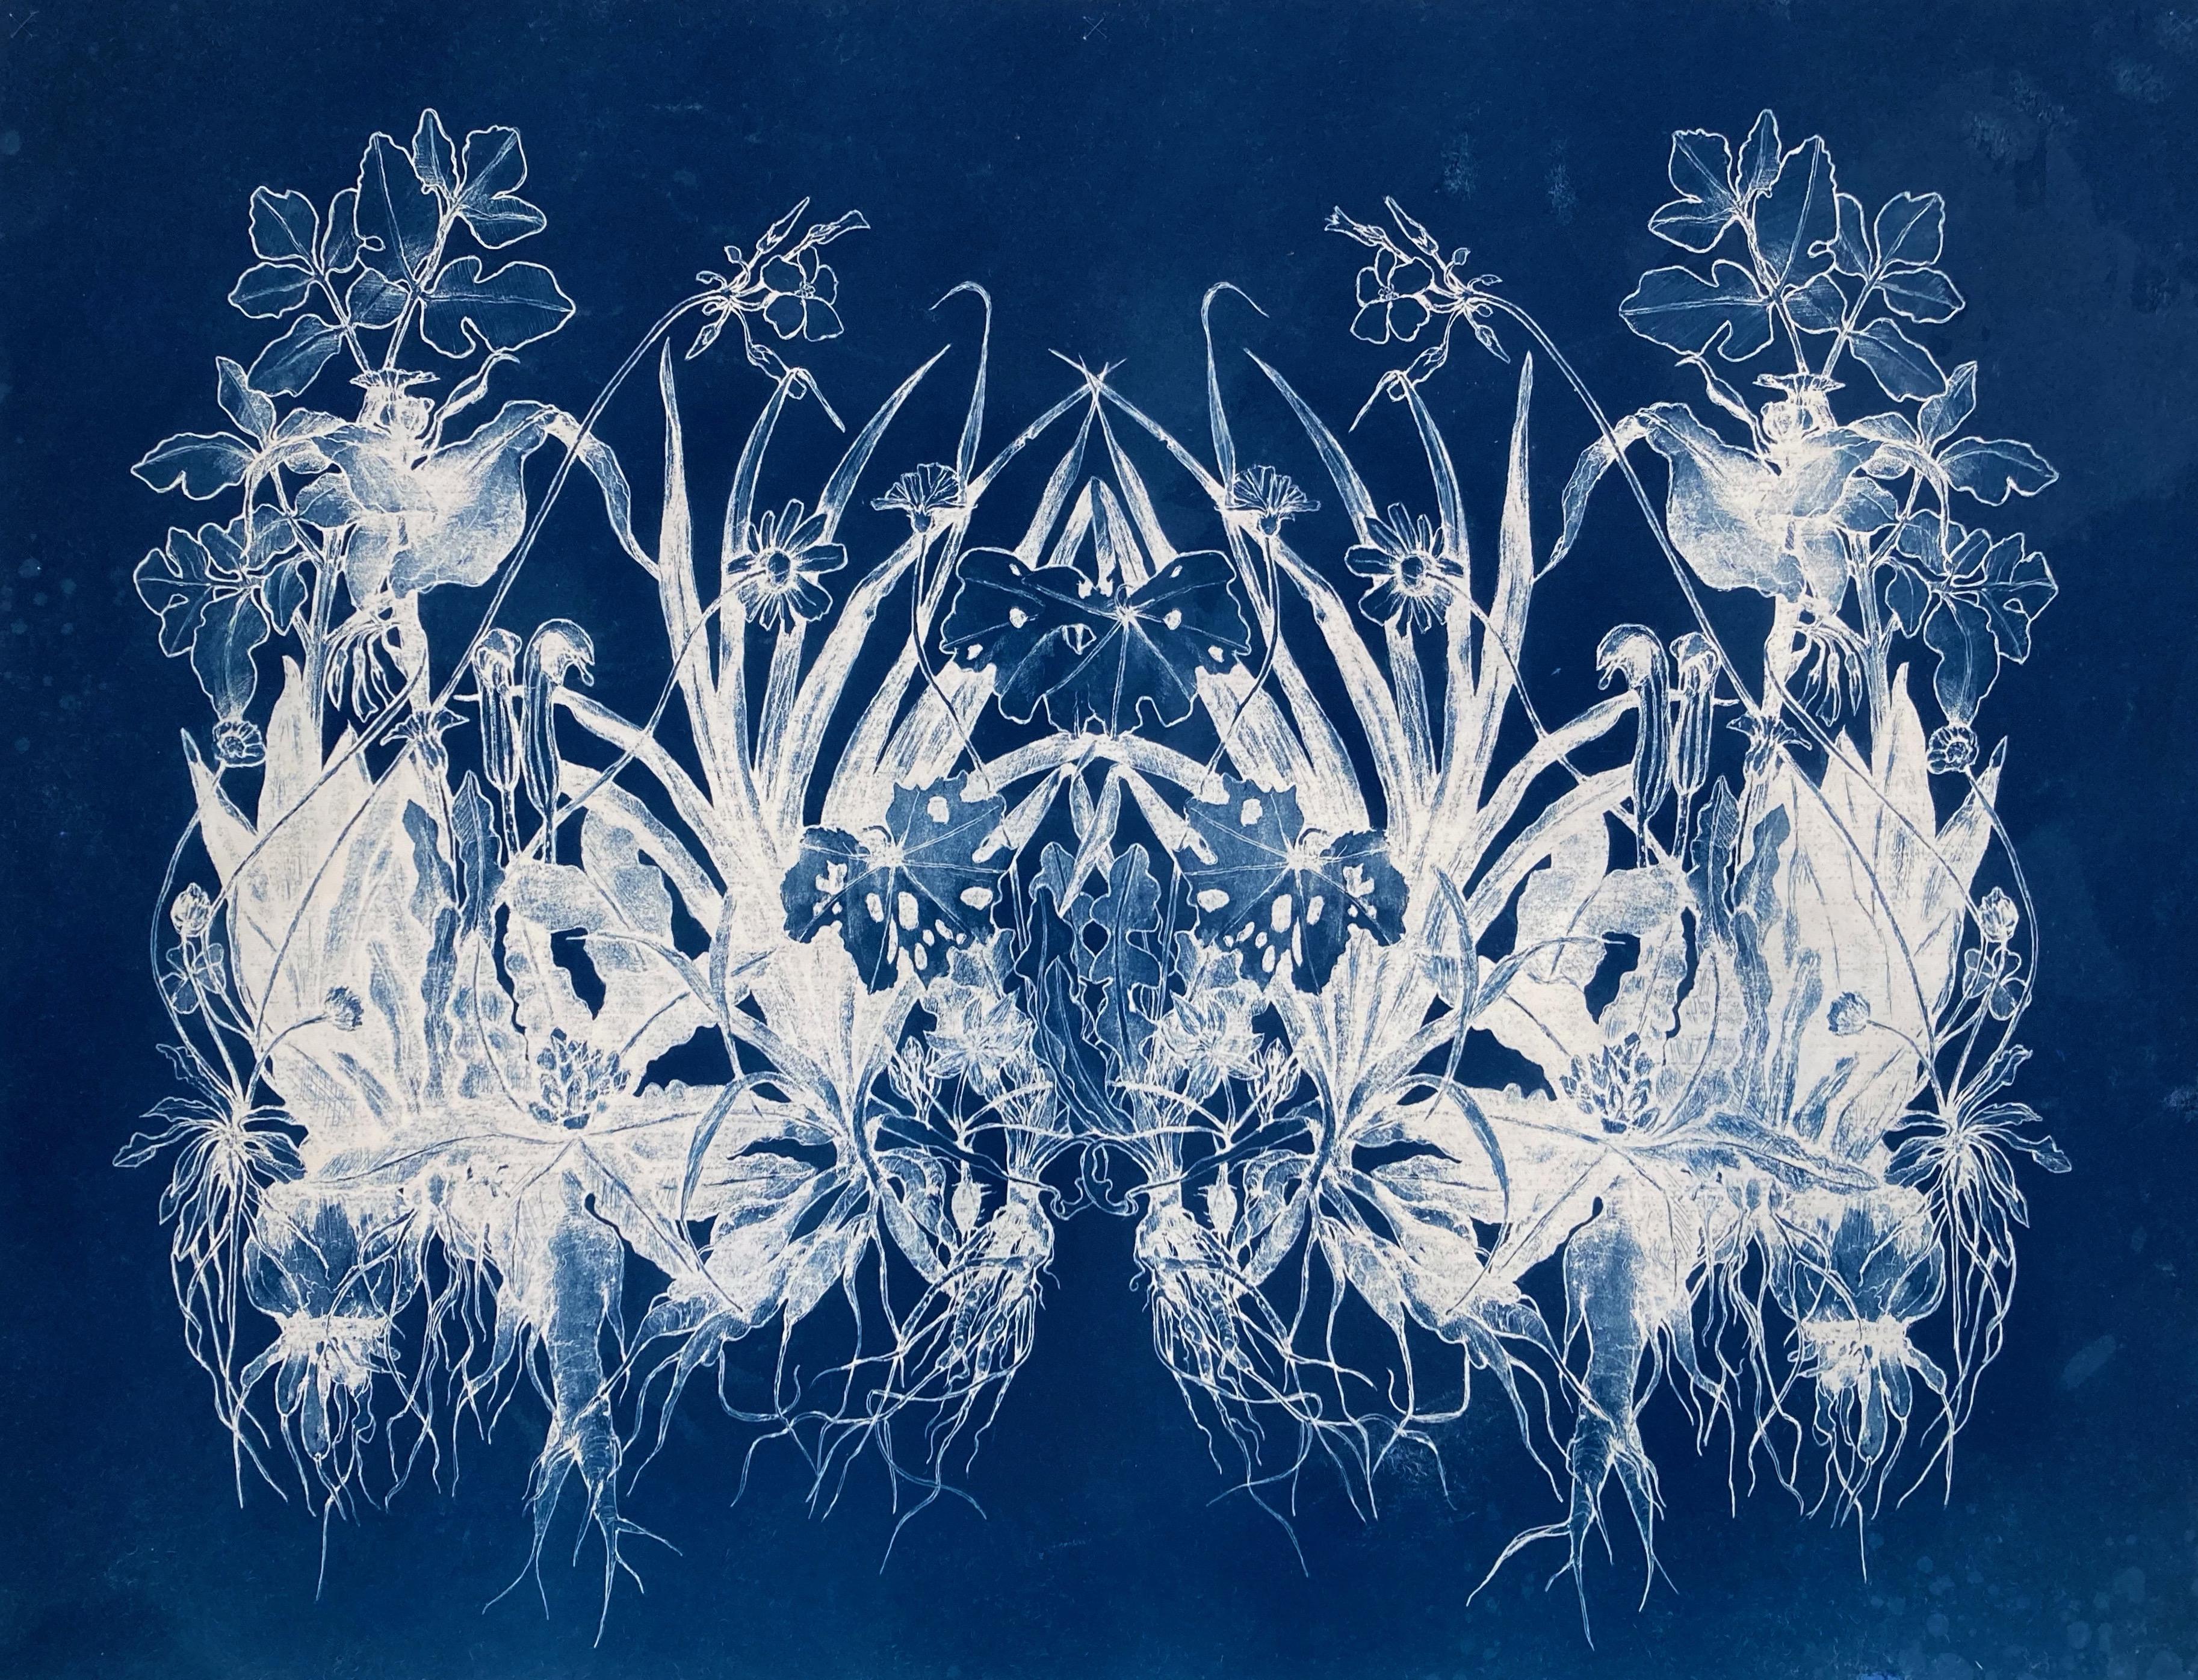 Dezember-Wurzeln".     Minimalistische/abstrakte Blumenmuster-Fotografie in Blau/Weiß